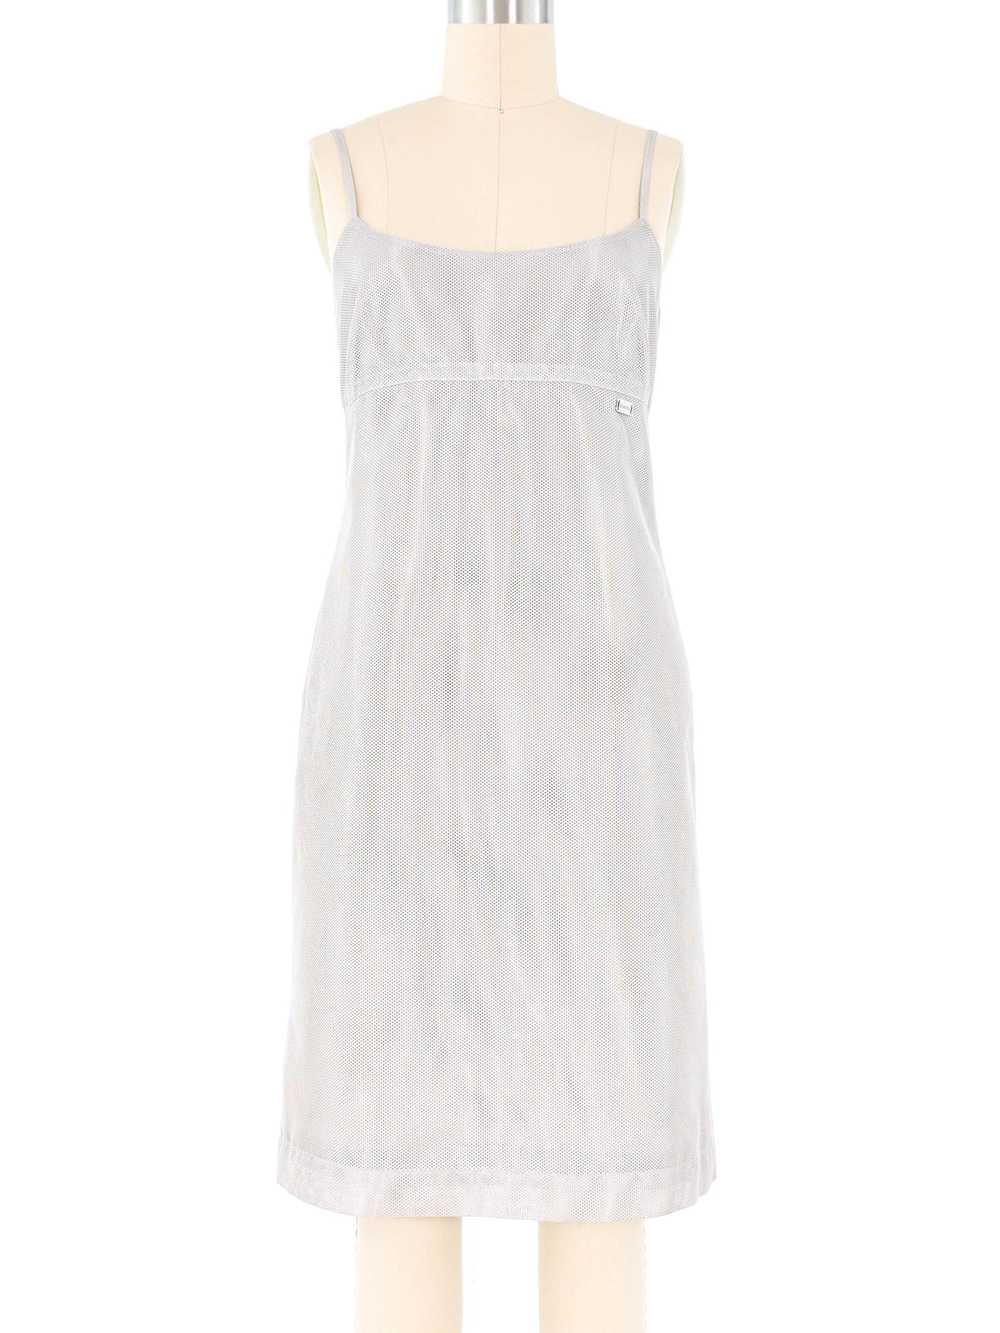 Chanel Silver Mesh Tank Dress - image 1